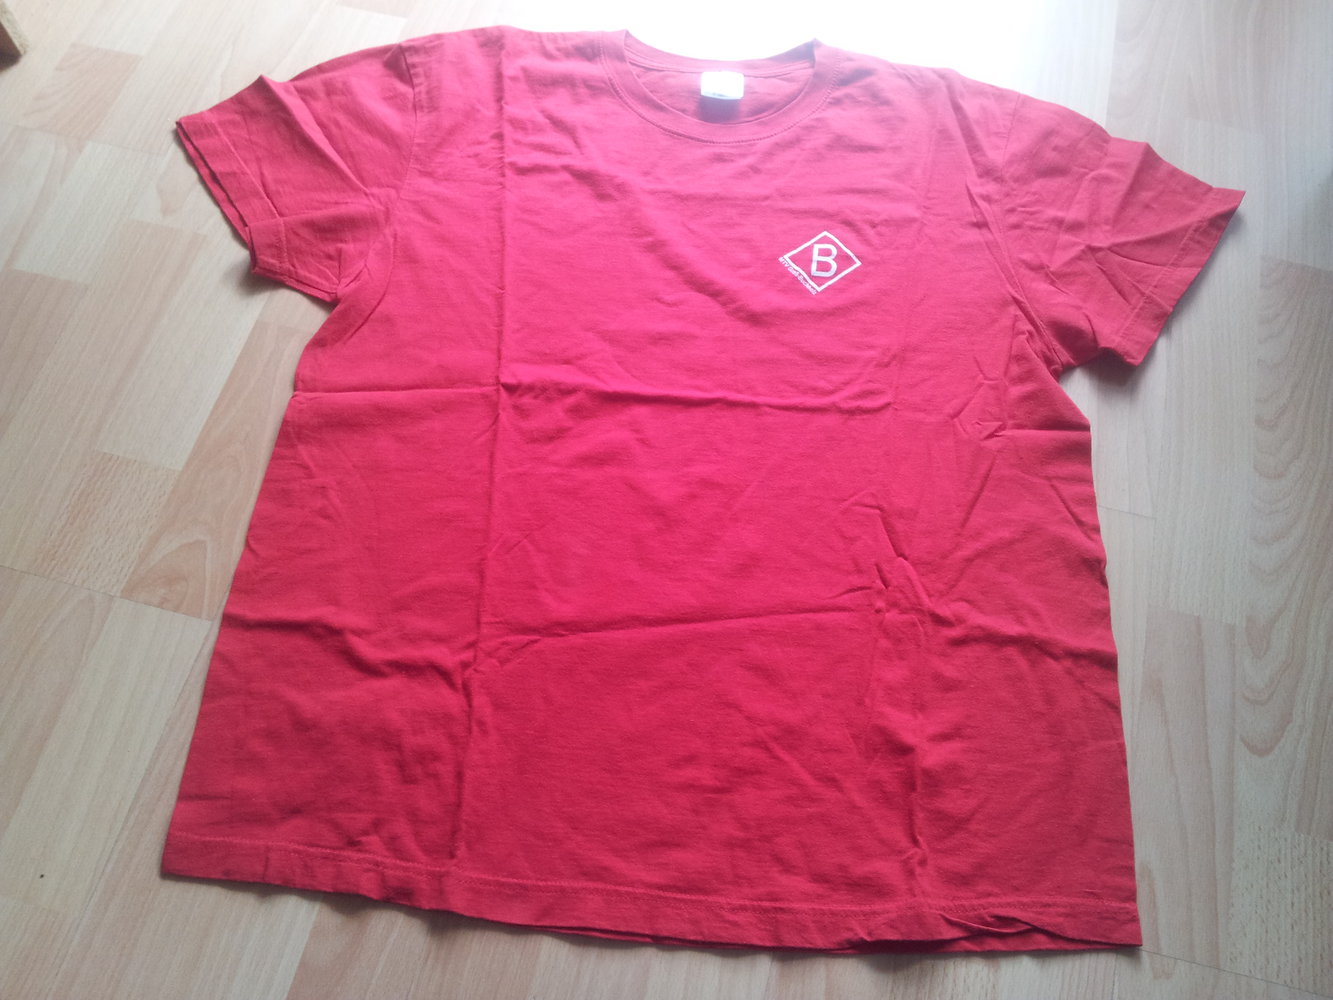  Shirt rot MTV Groß- Buchholz Hannover Baumwolle Gr. XL